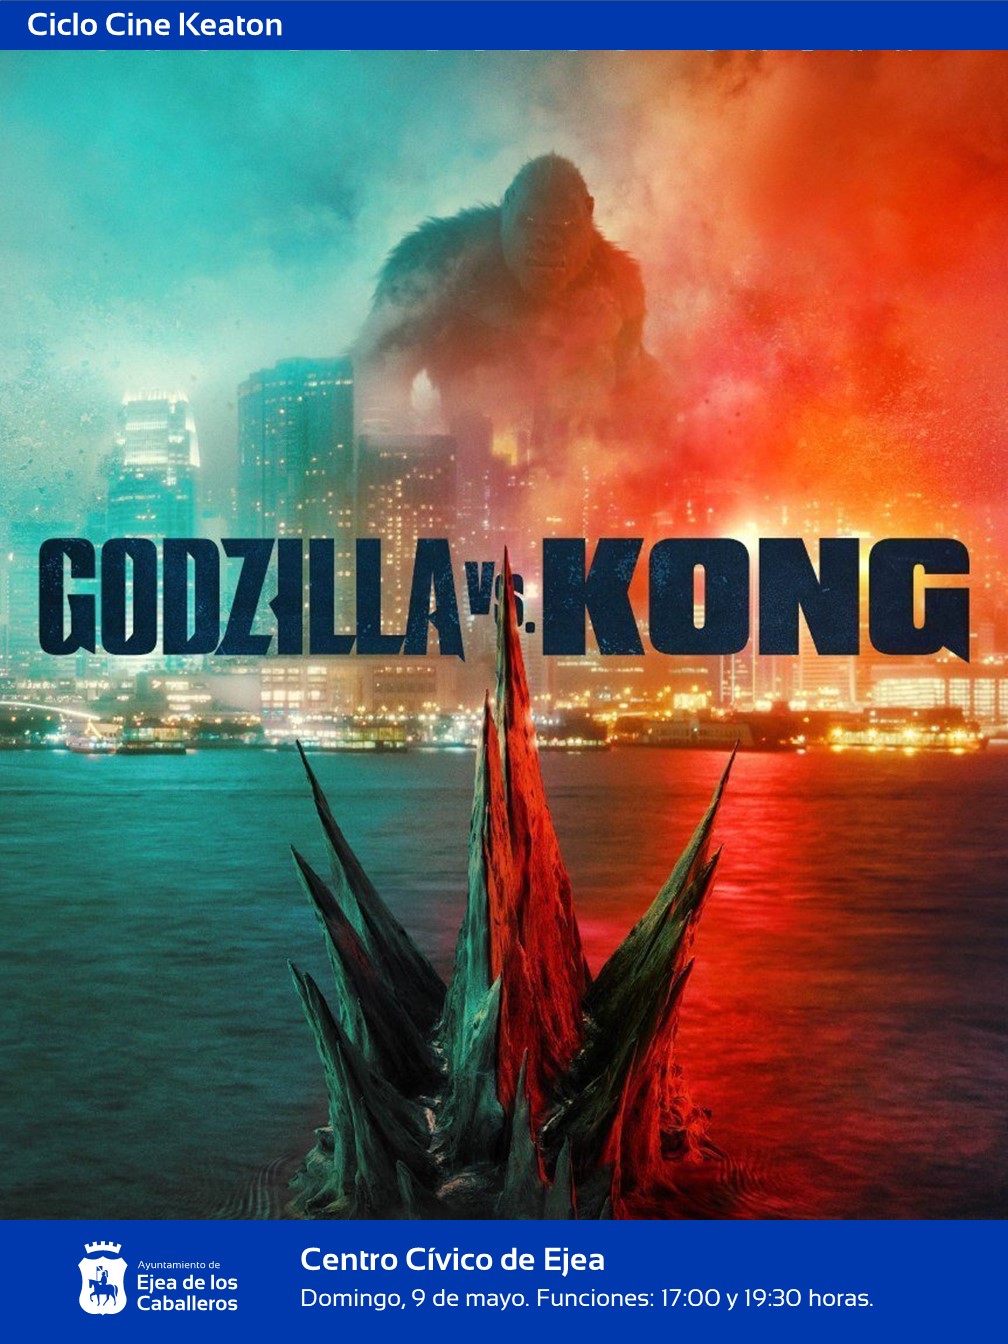 En este momento estás viendo Ejea apoya el cine: Acción, espectáculo y ciencia-ficción en la película “Godzilla vs Kong”